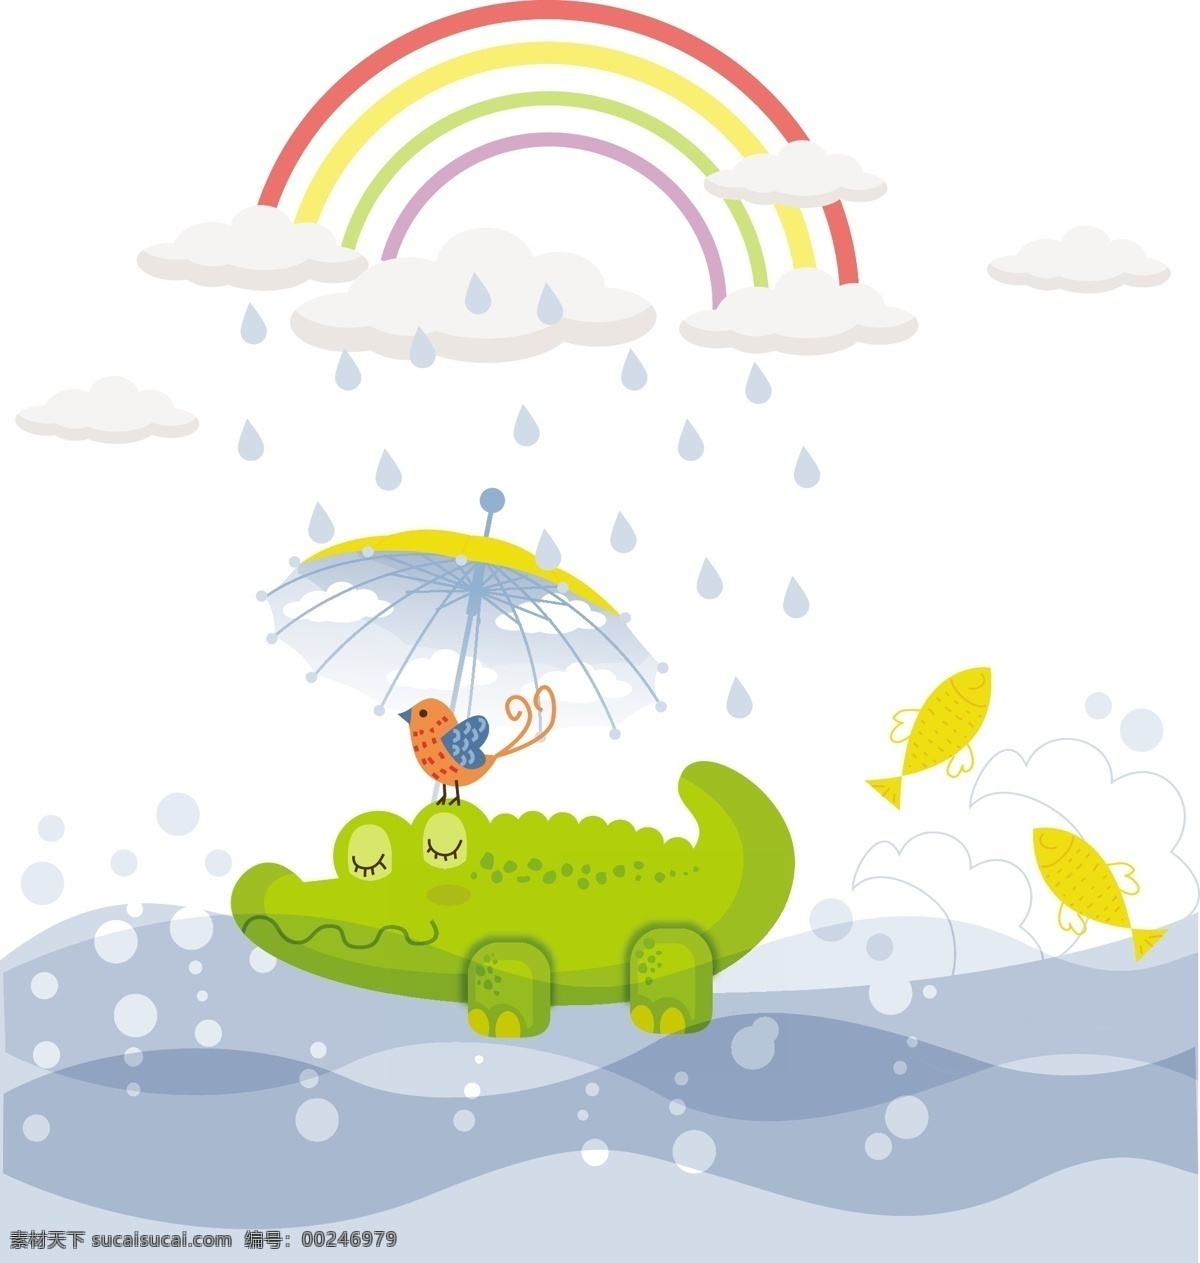 童趣 绿色 鳄鱼 插画 矢量 雨伞 鸟 河流 鱼 雨滴 卡通 彩虹 矢量图